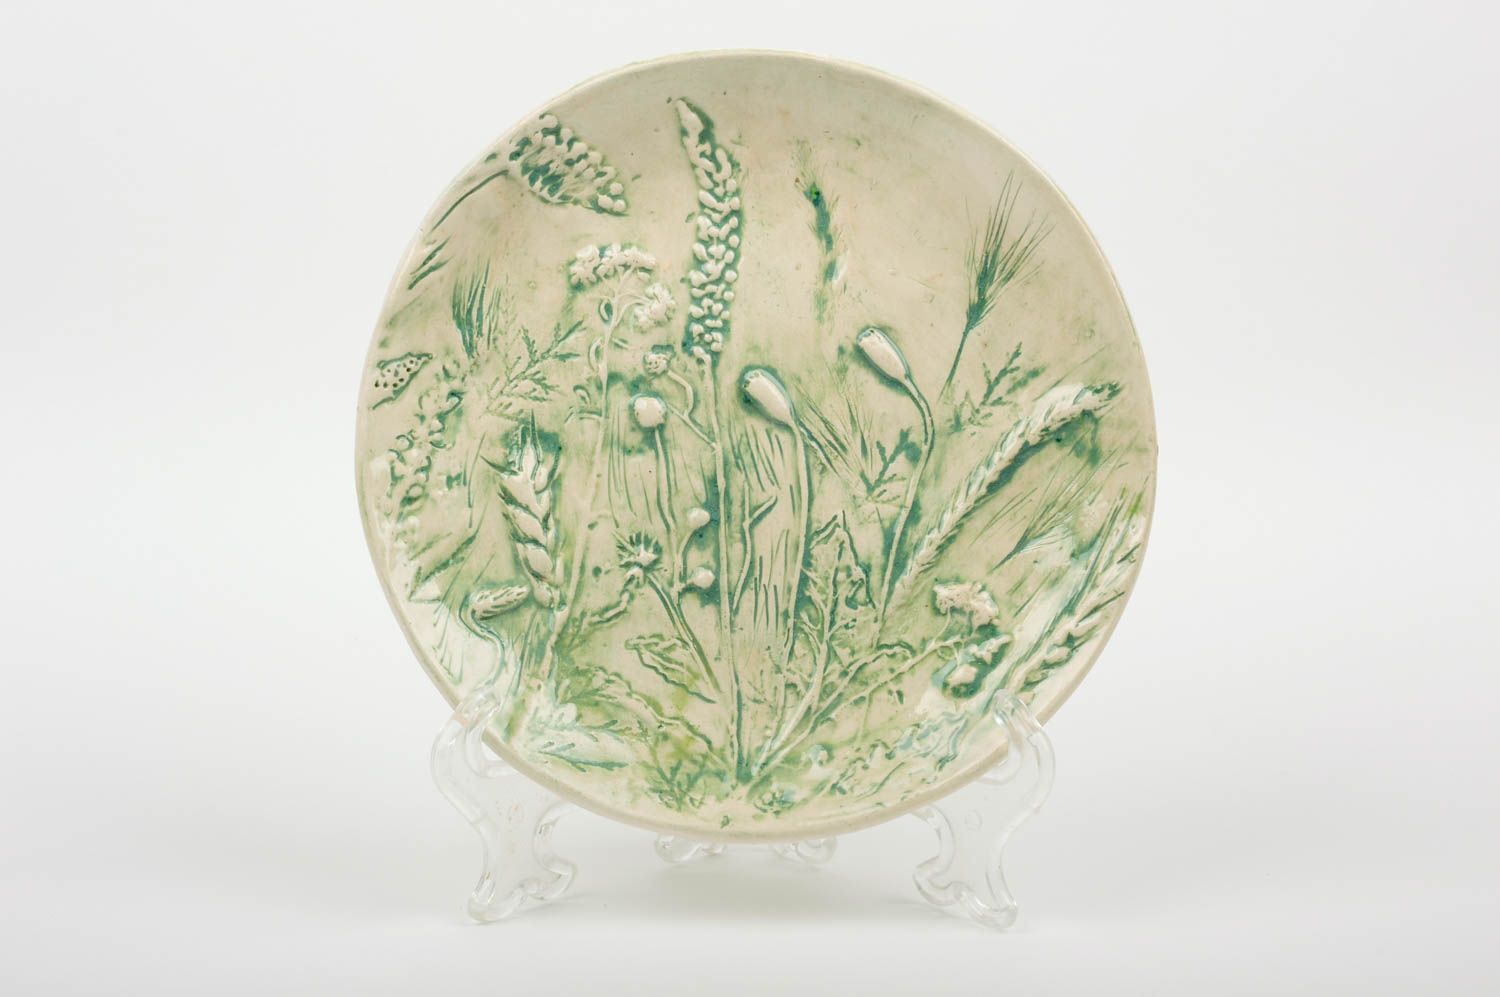 Plato de barro artículo de cerámica regalo original hecho a mano con ornamentos foto 1